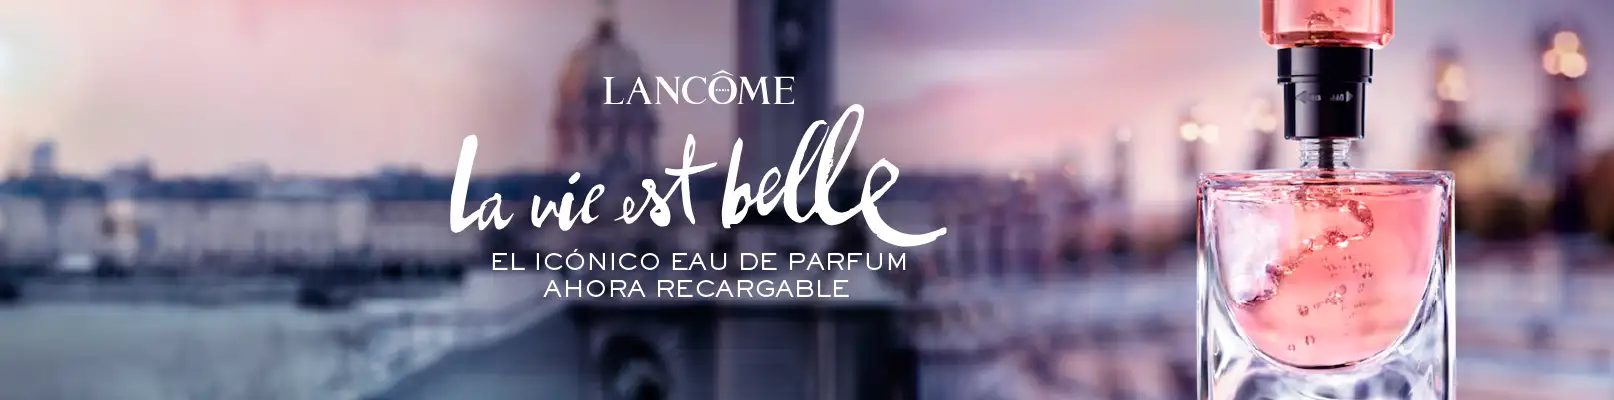 Descubra los perfumes de lujo Lancôme en de la Uz online